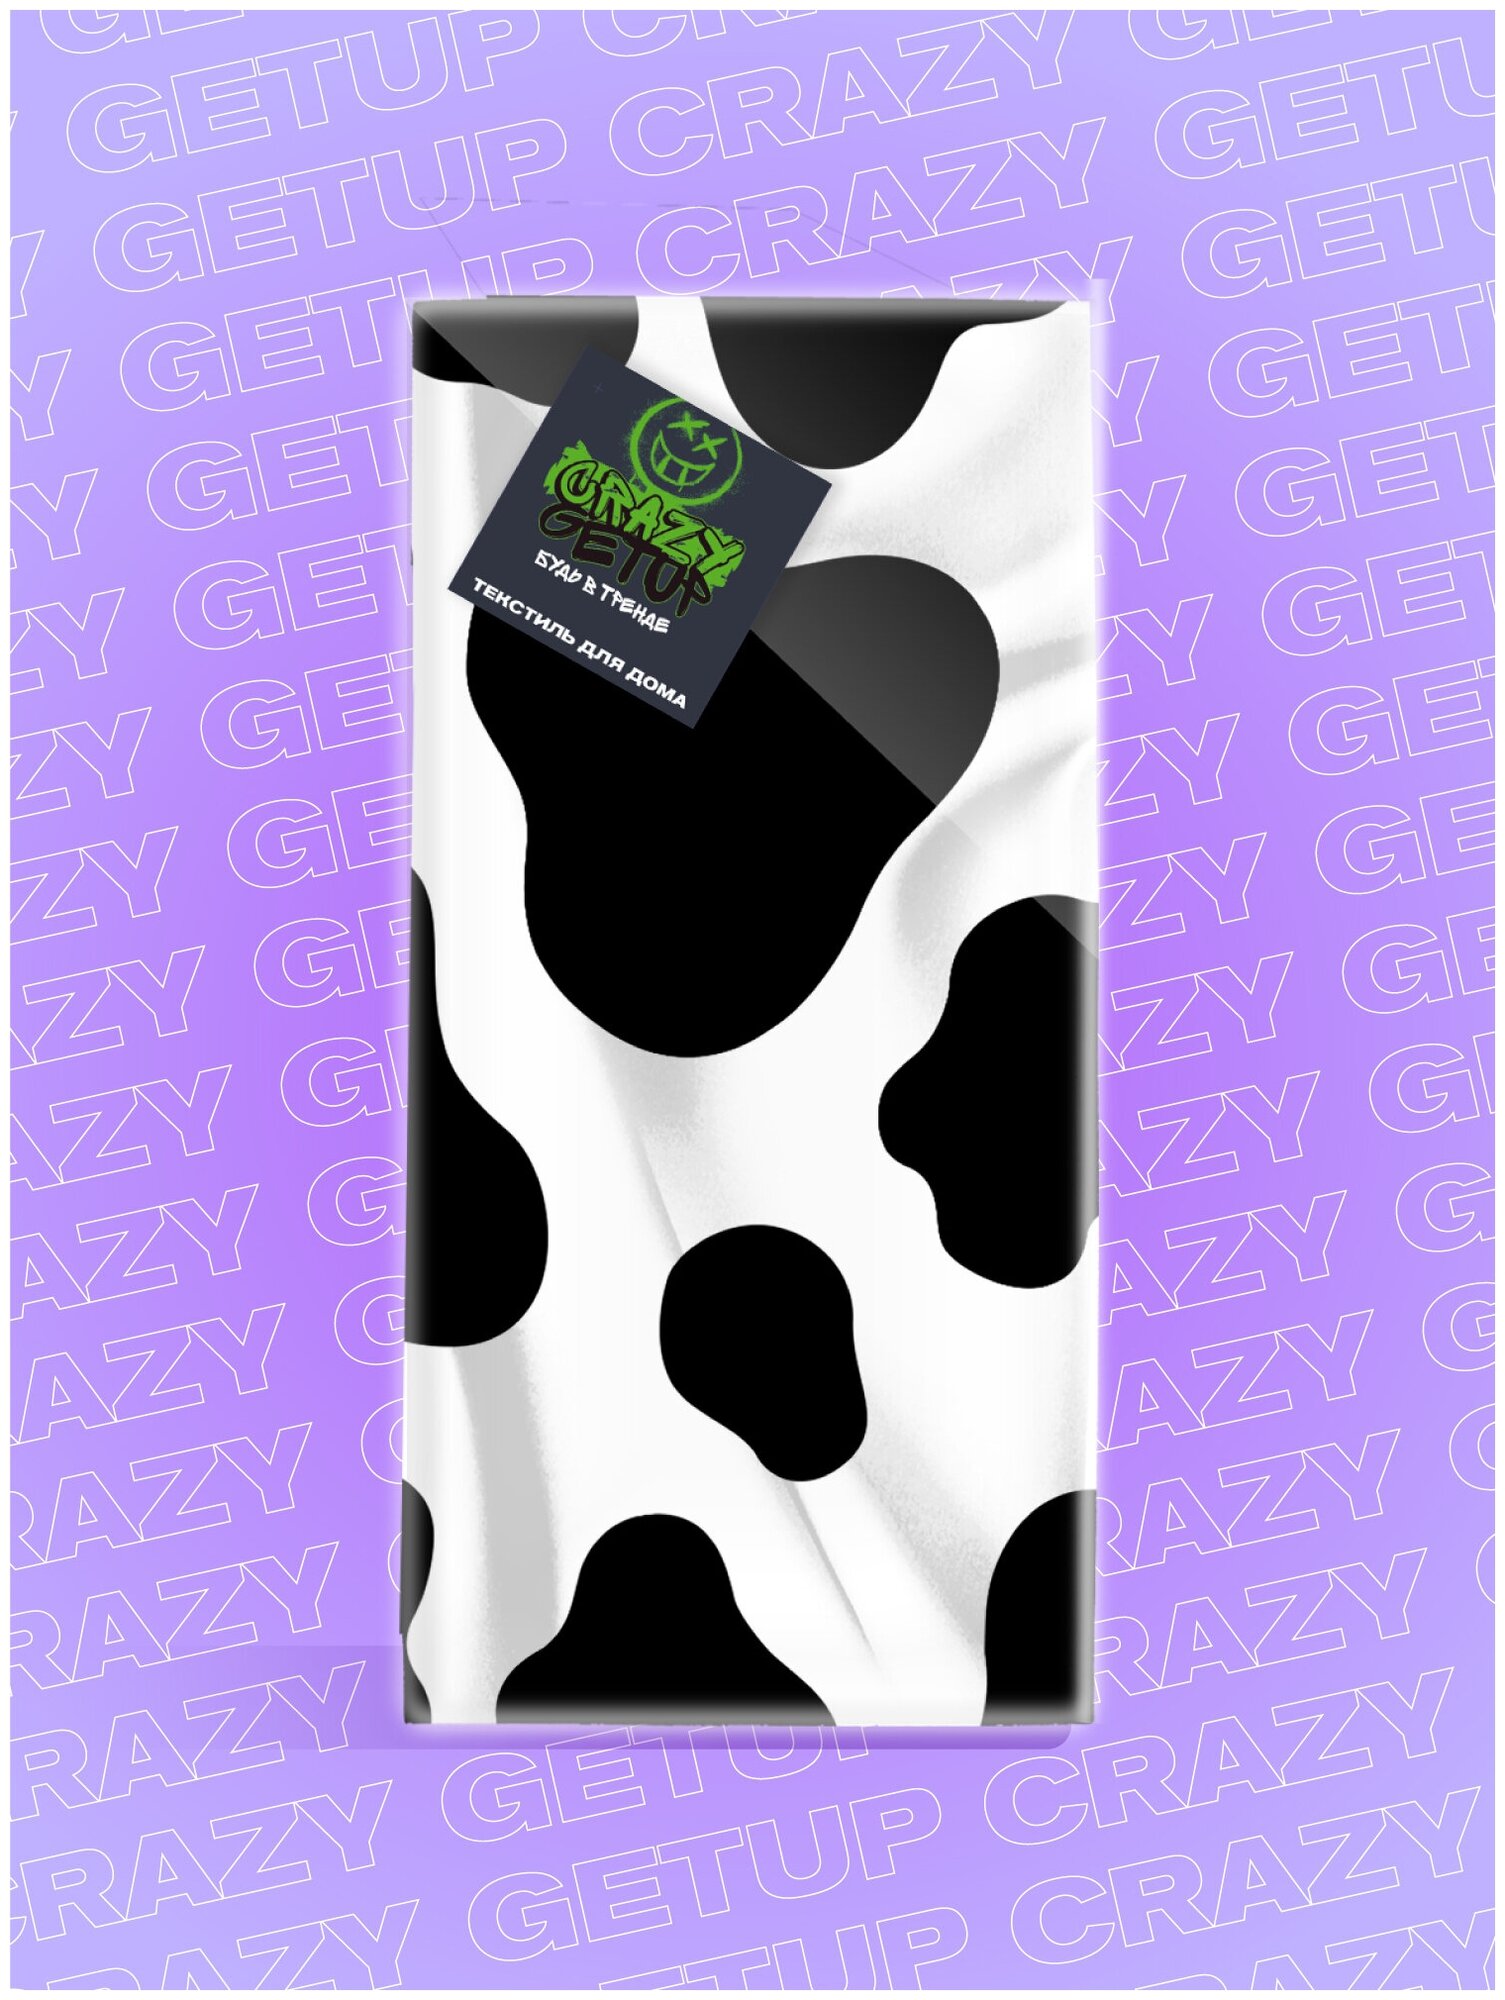 Комплект вафельных полотенец 45х60 (5 шт.) "Crazy Getup" рис 16585-1 Cow - фотография № 2